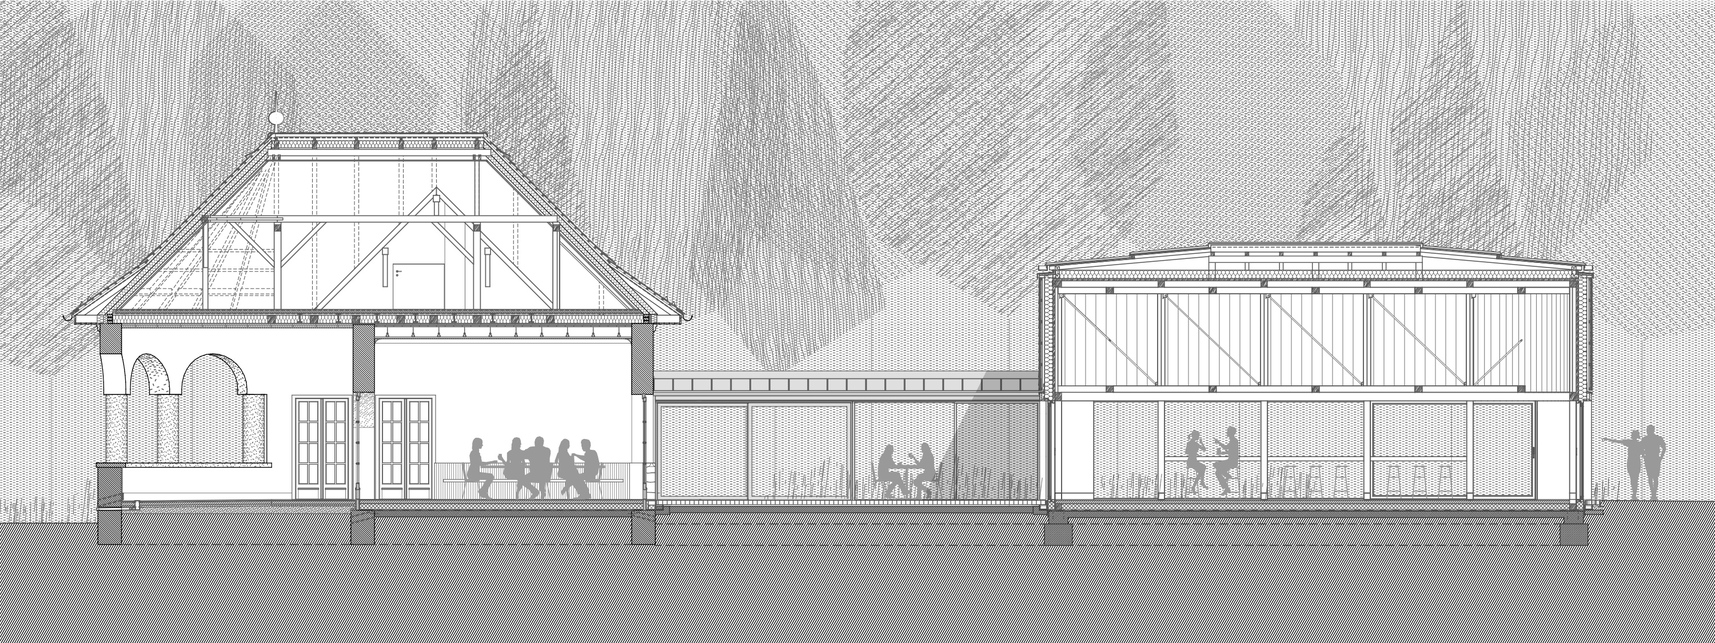 Normafa Síház rekonstrukciója és bővítése – hosszmetszet – terv: Hetedik Műterem és Studio Konstella